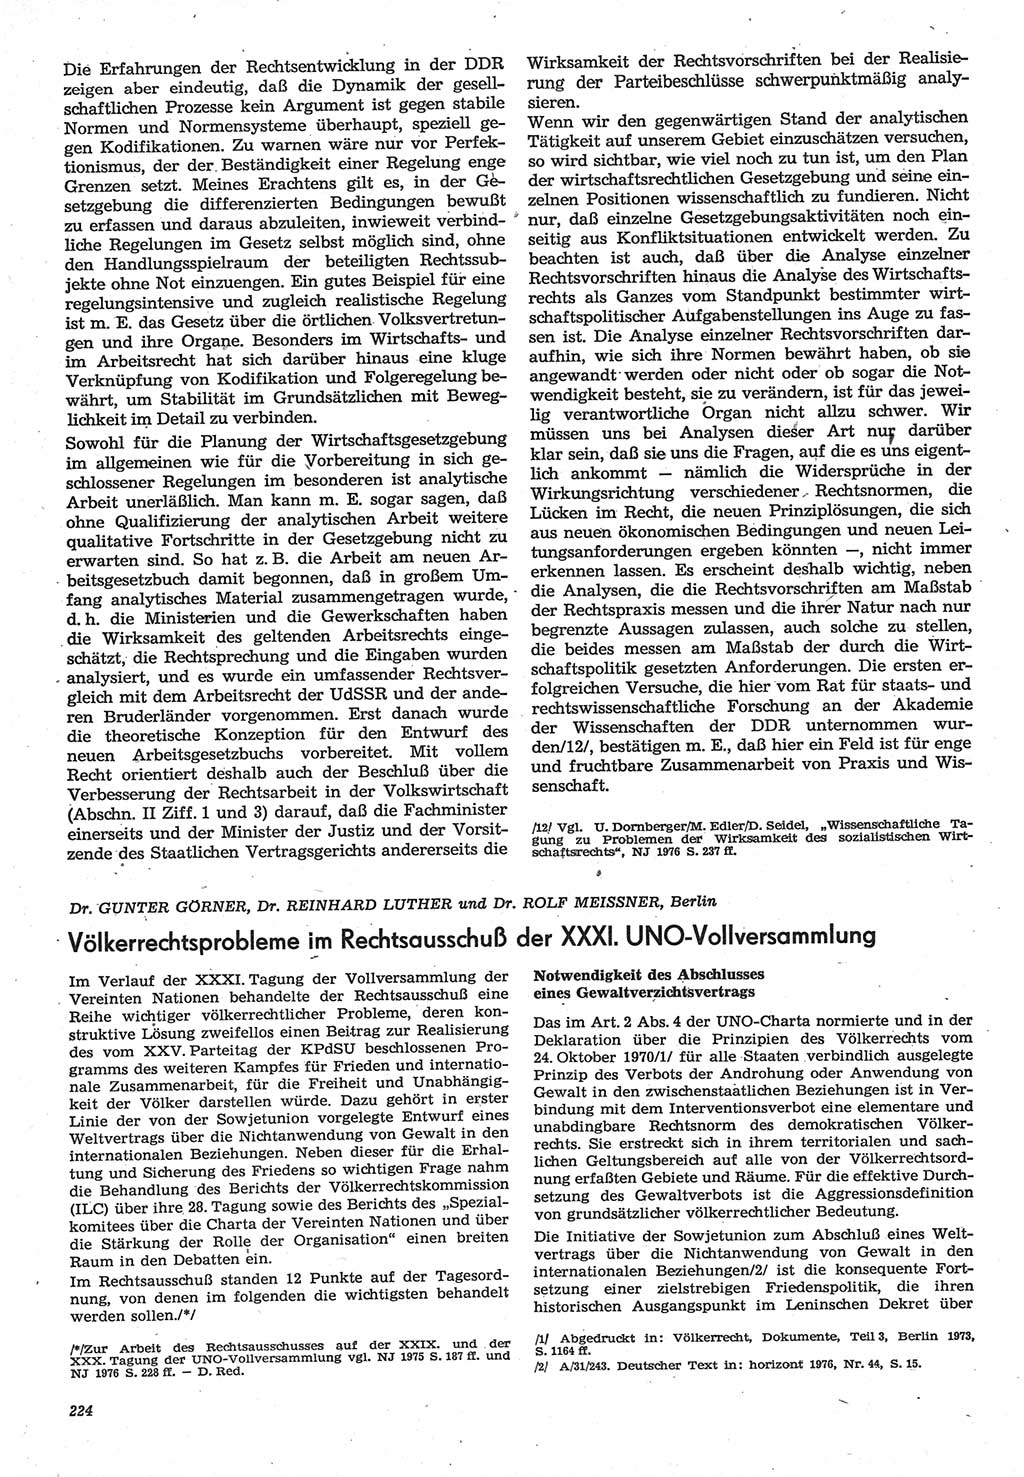 Neue Justiz (NJ), Zeitschrift für Recht und Rechtswissenschaft-Zeitschrift, sozialistisches Recht und Gesetzlichkeit, 31. Jahrgang 1977, Seite 224 (NJ DDR 1977, S. 224)